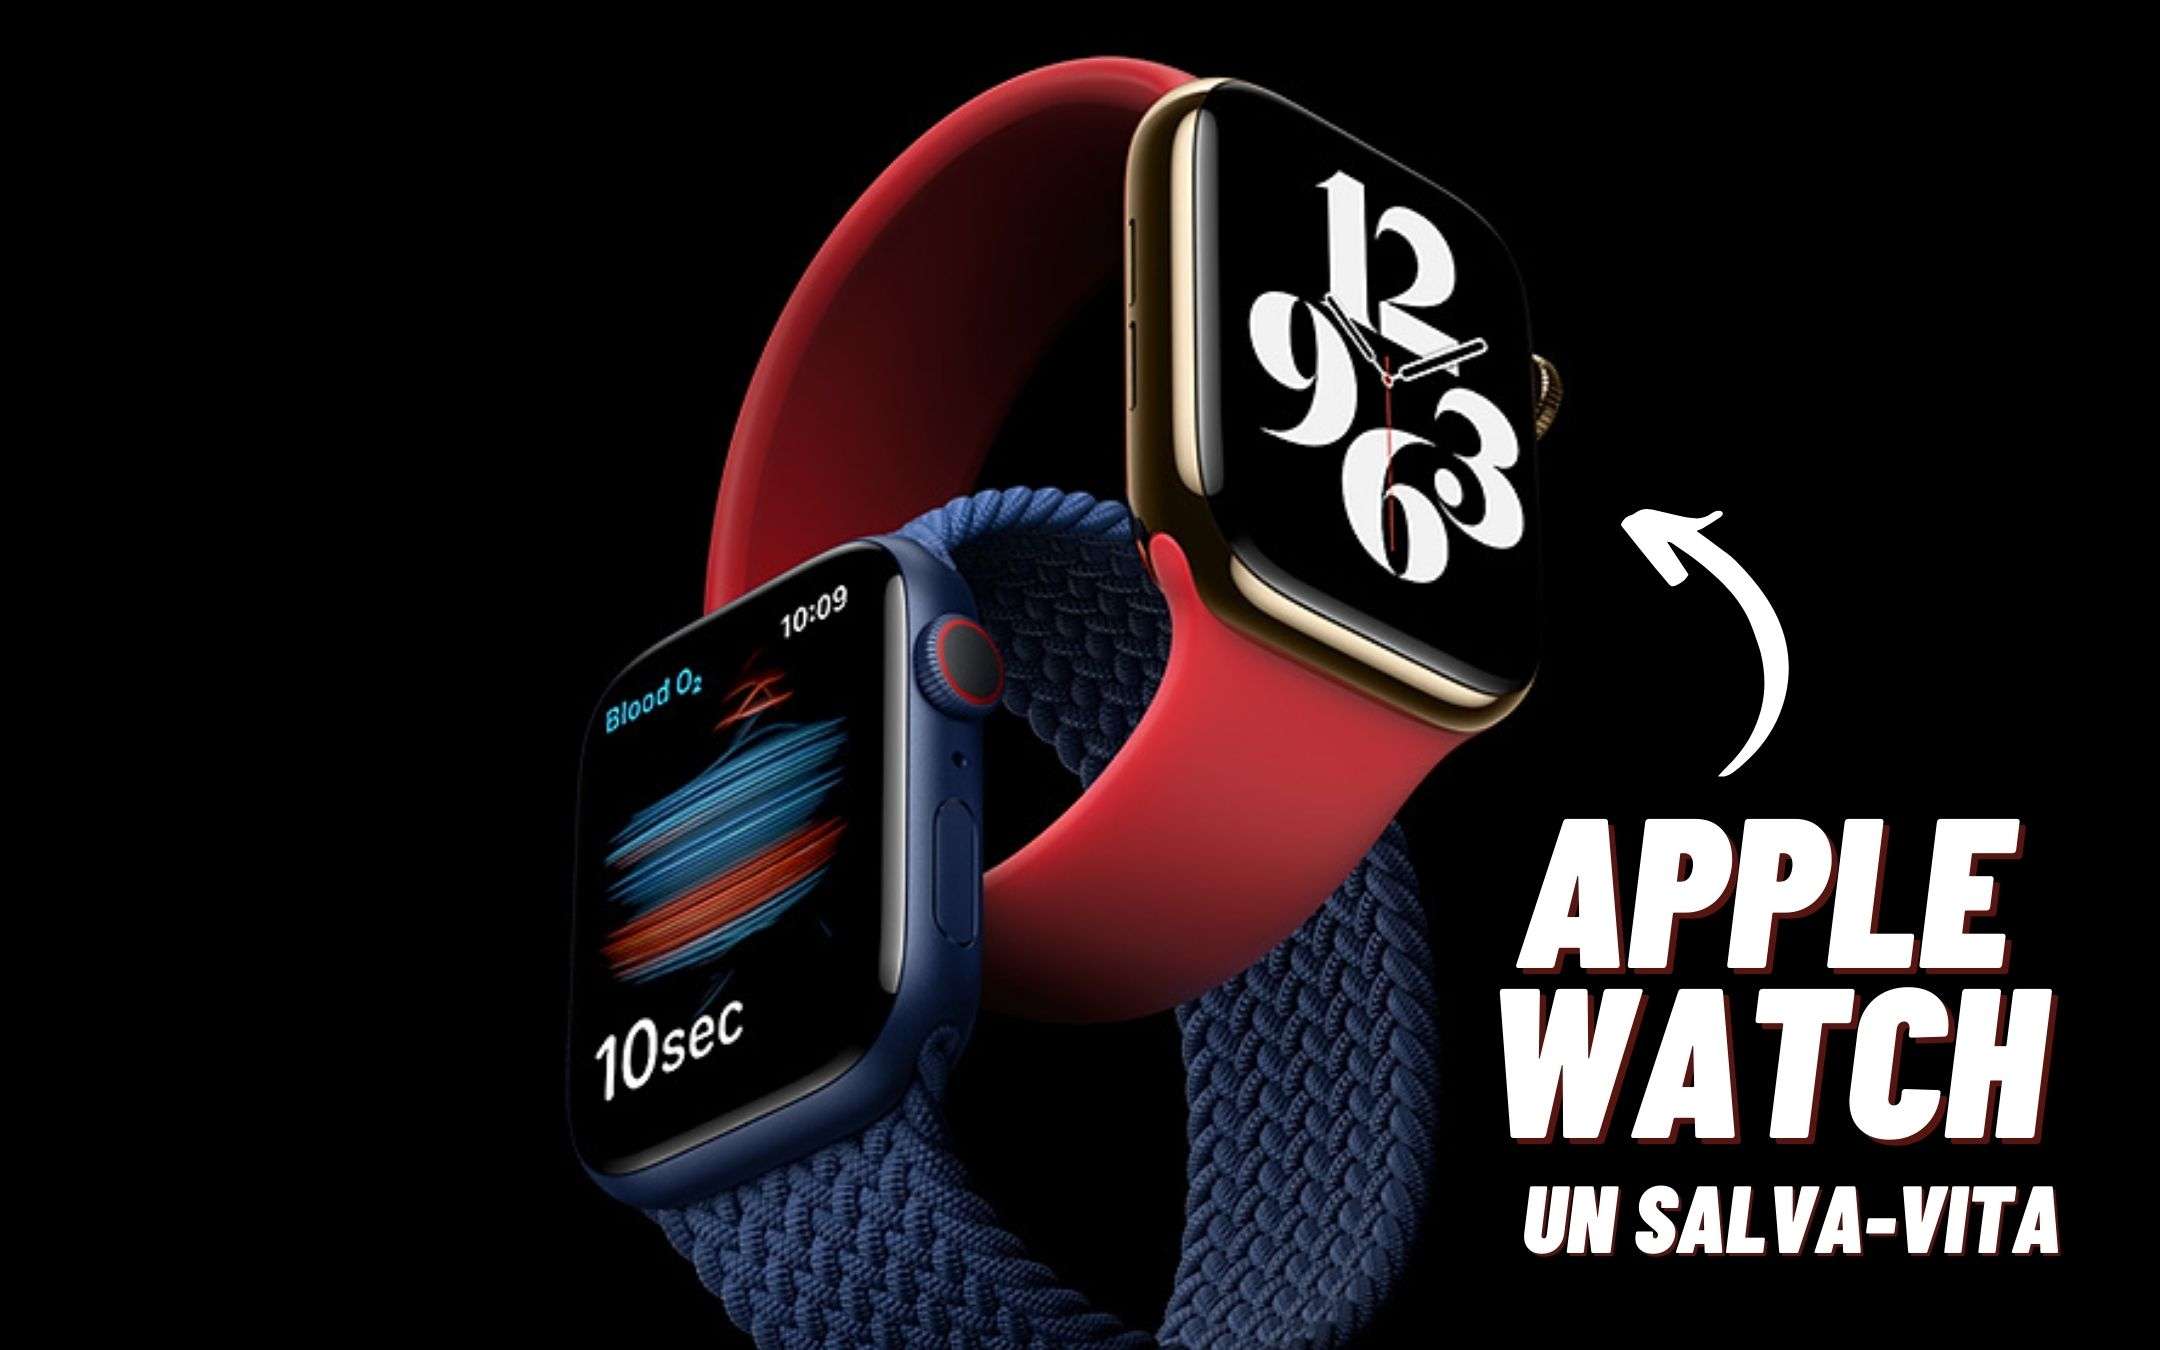 Apple Watch è un salva-vita: ecco perché